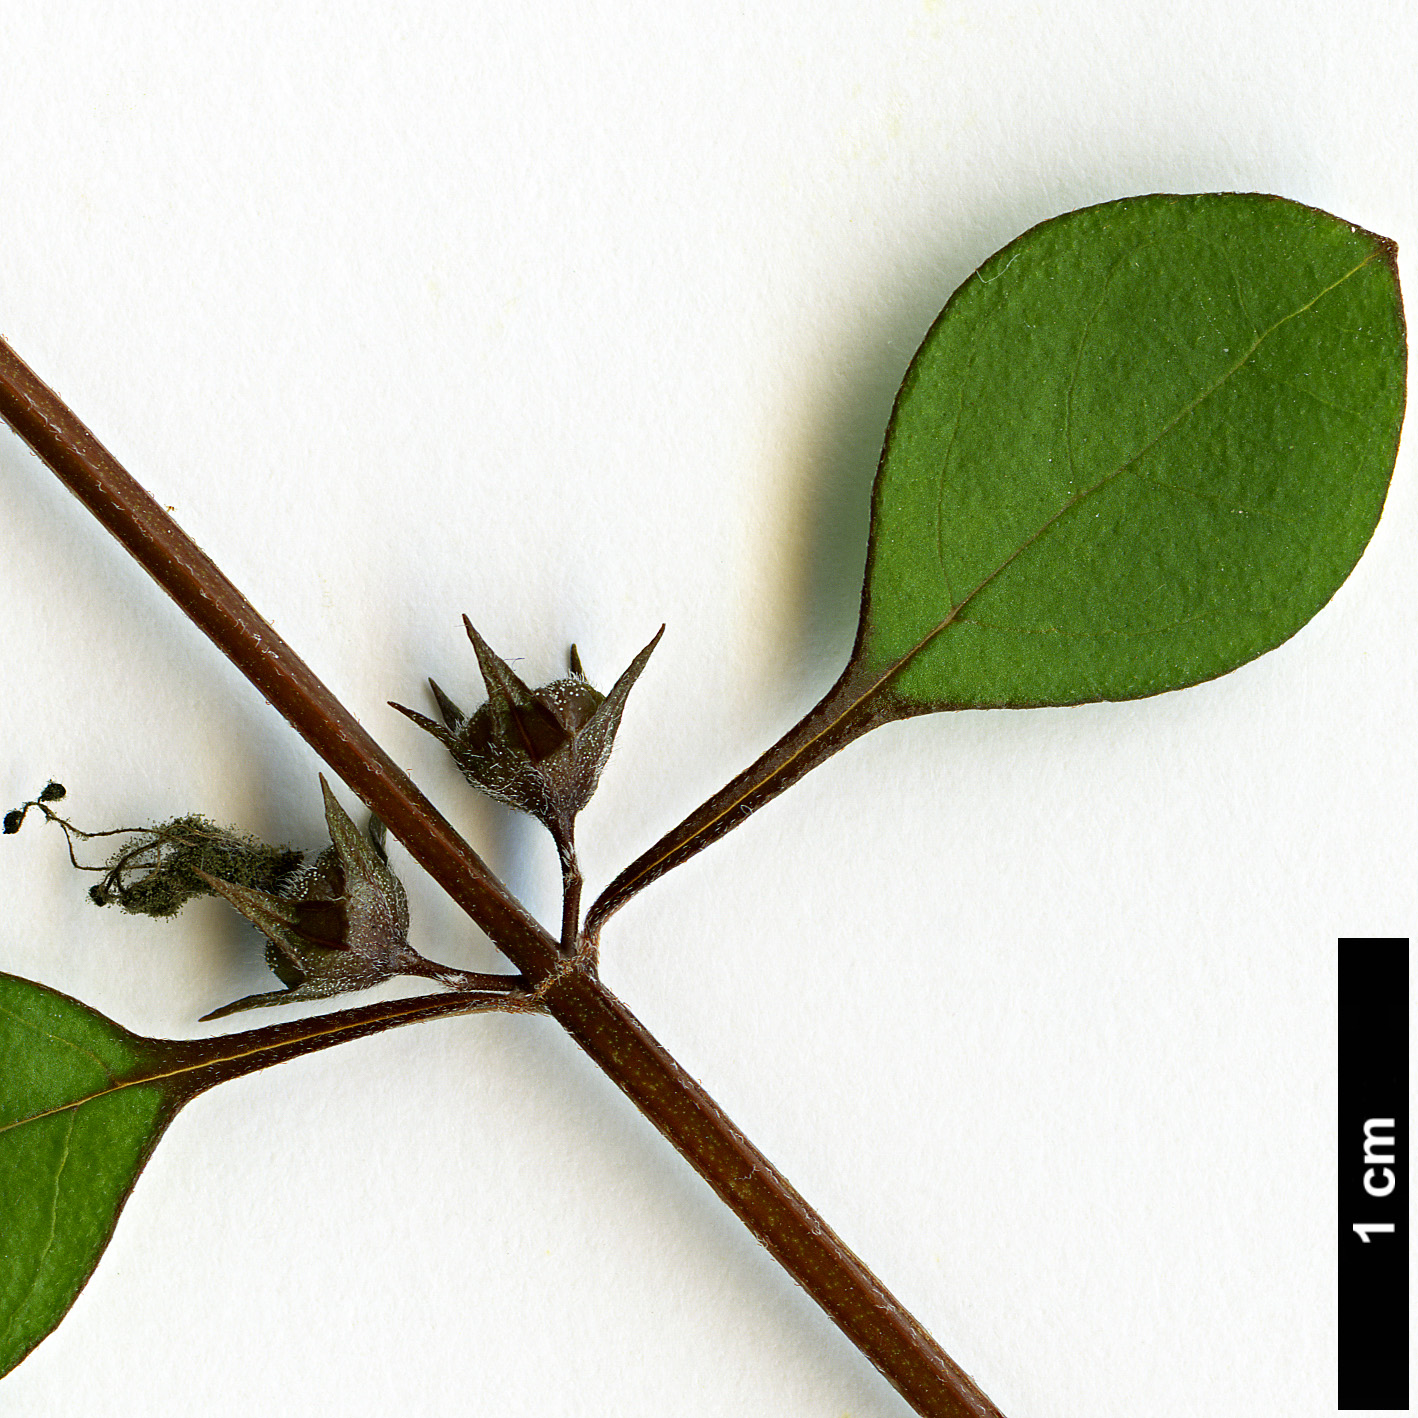 High resolution image: Family: Lamiaceae - Genus: Teucridium - Taxon: parvifolium